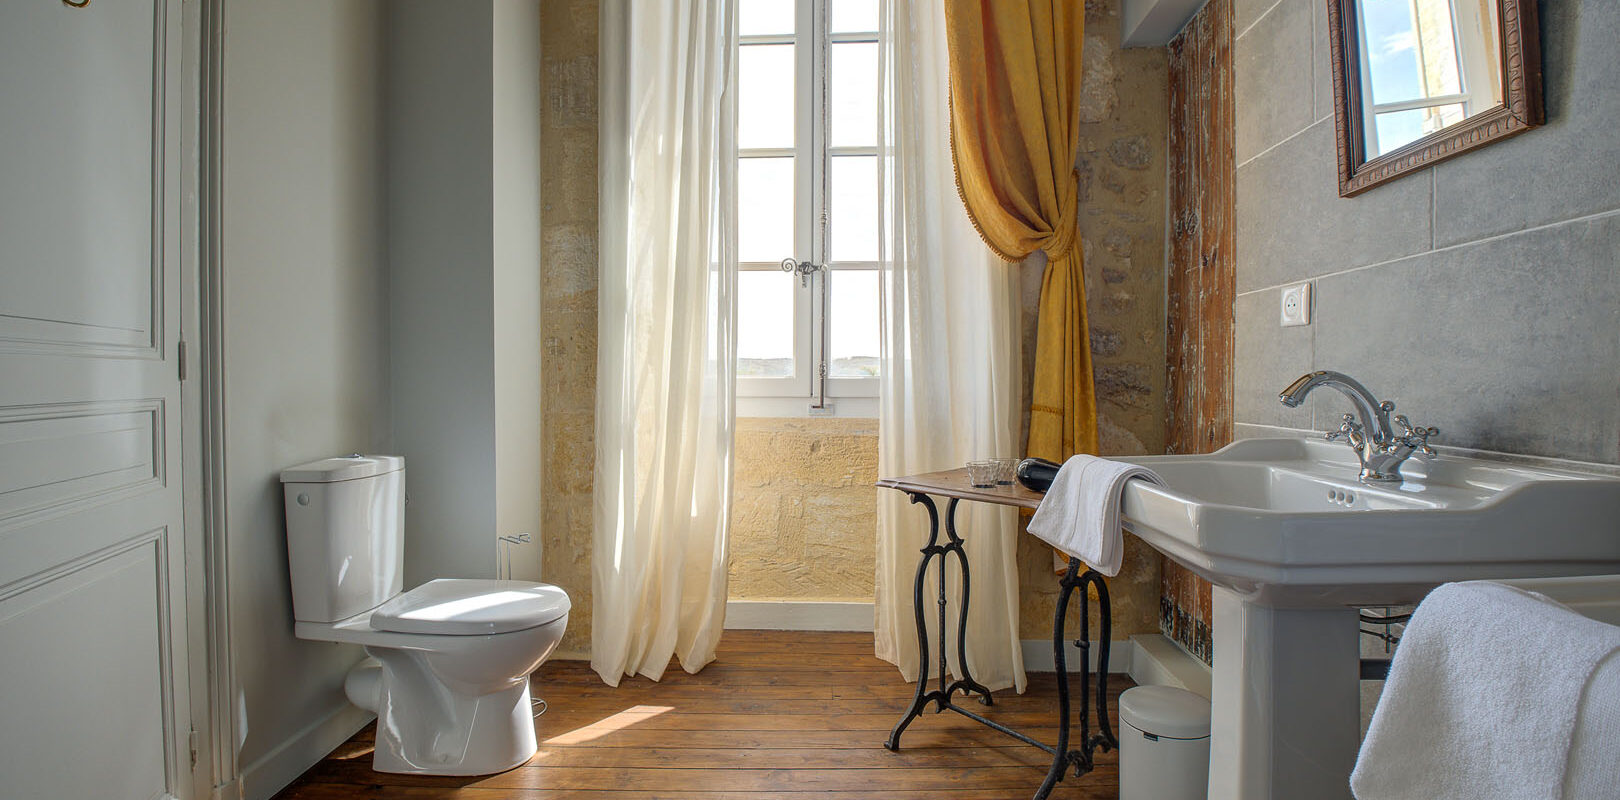 A bathroom at Le Prieuré gîte in Saint-Cyprien, by Peridoors